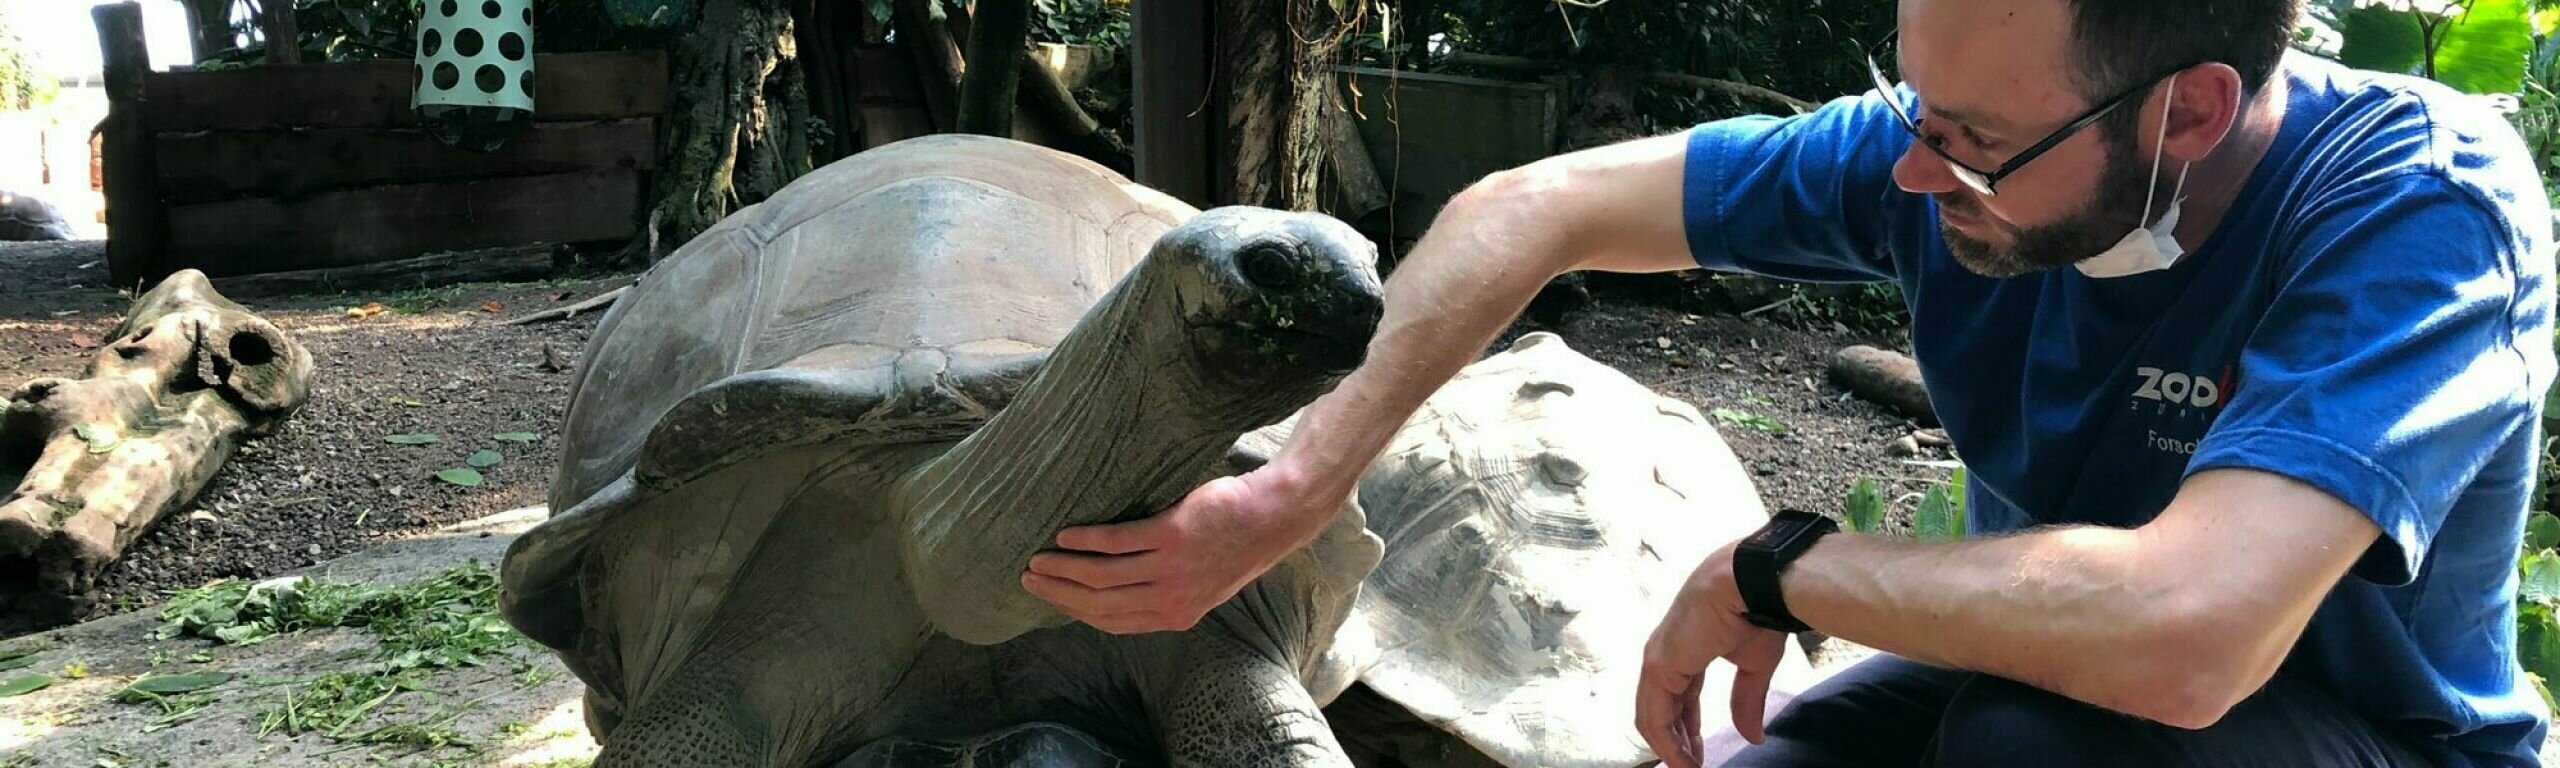 L'auteur Andreas Eggimann caresse une tortue géante au zoo.